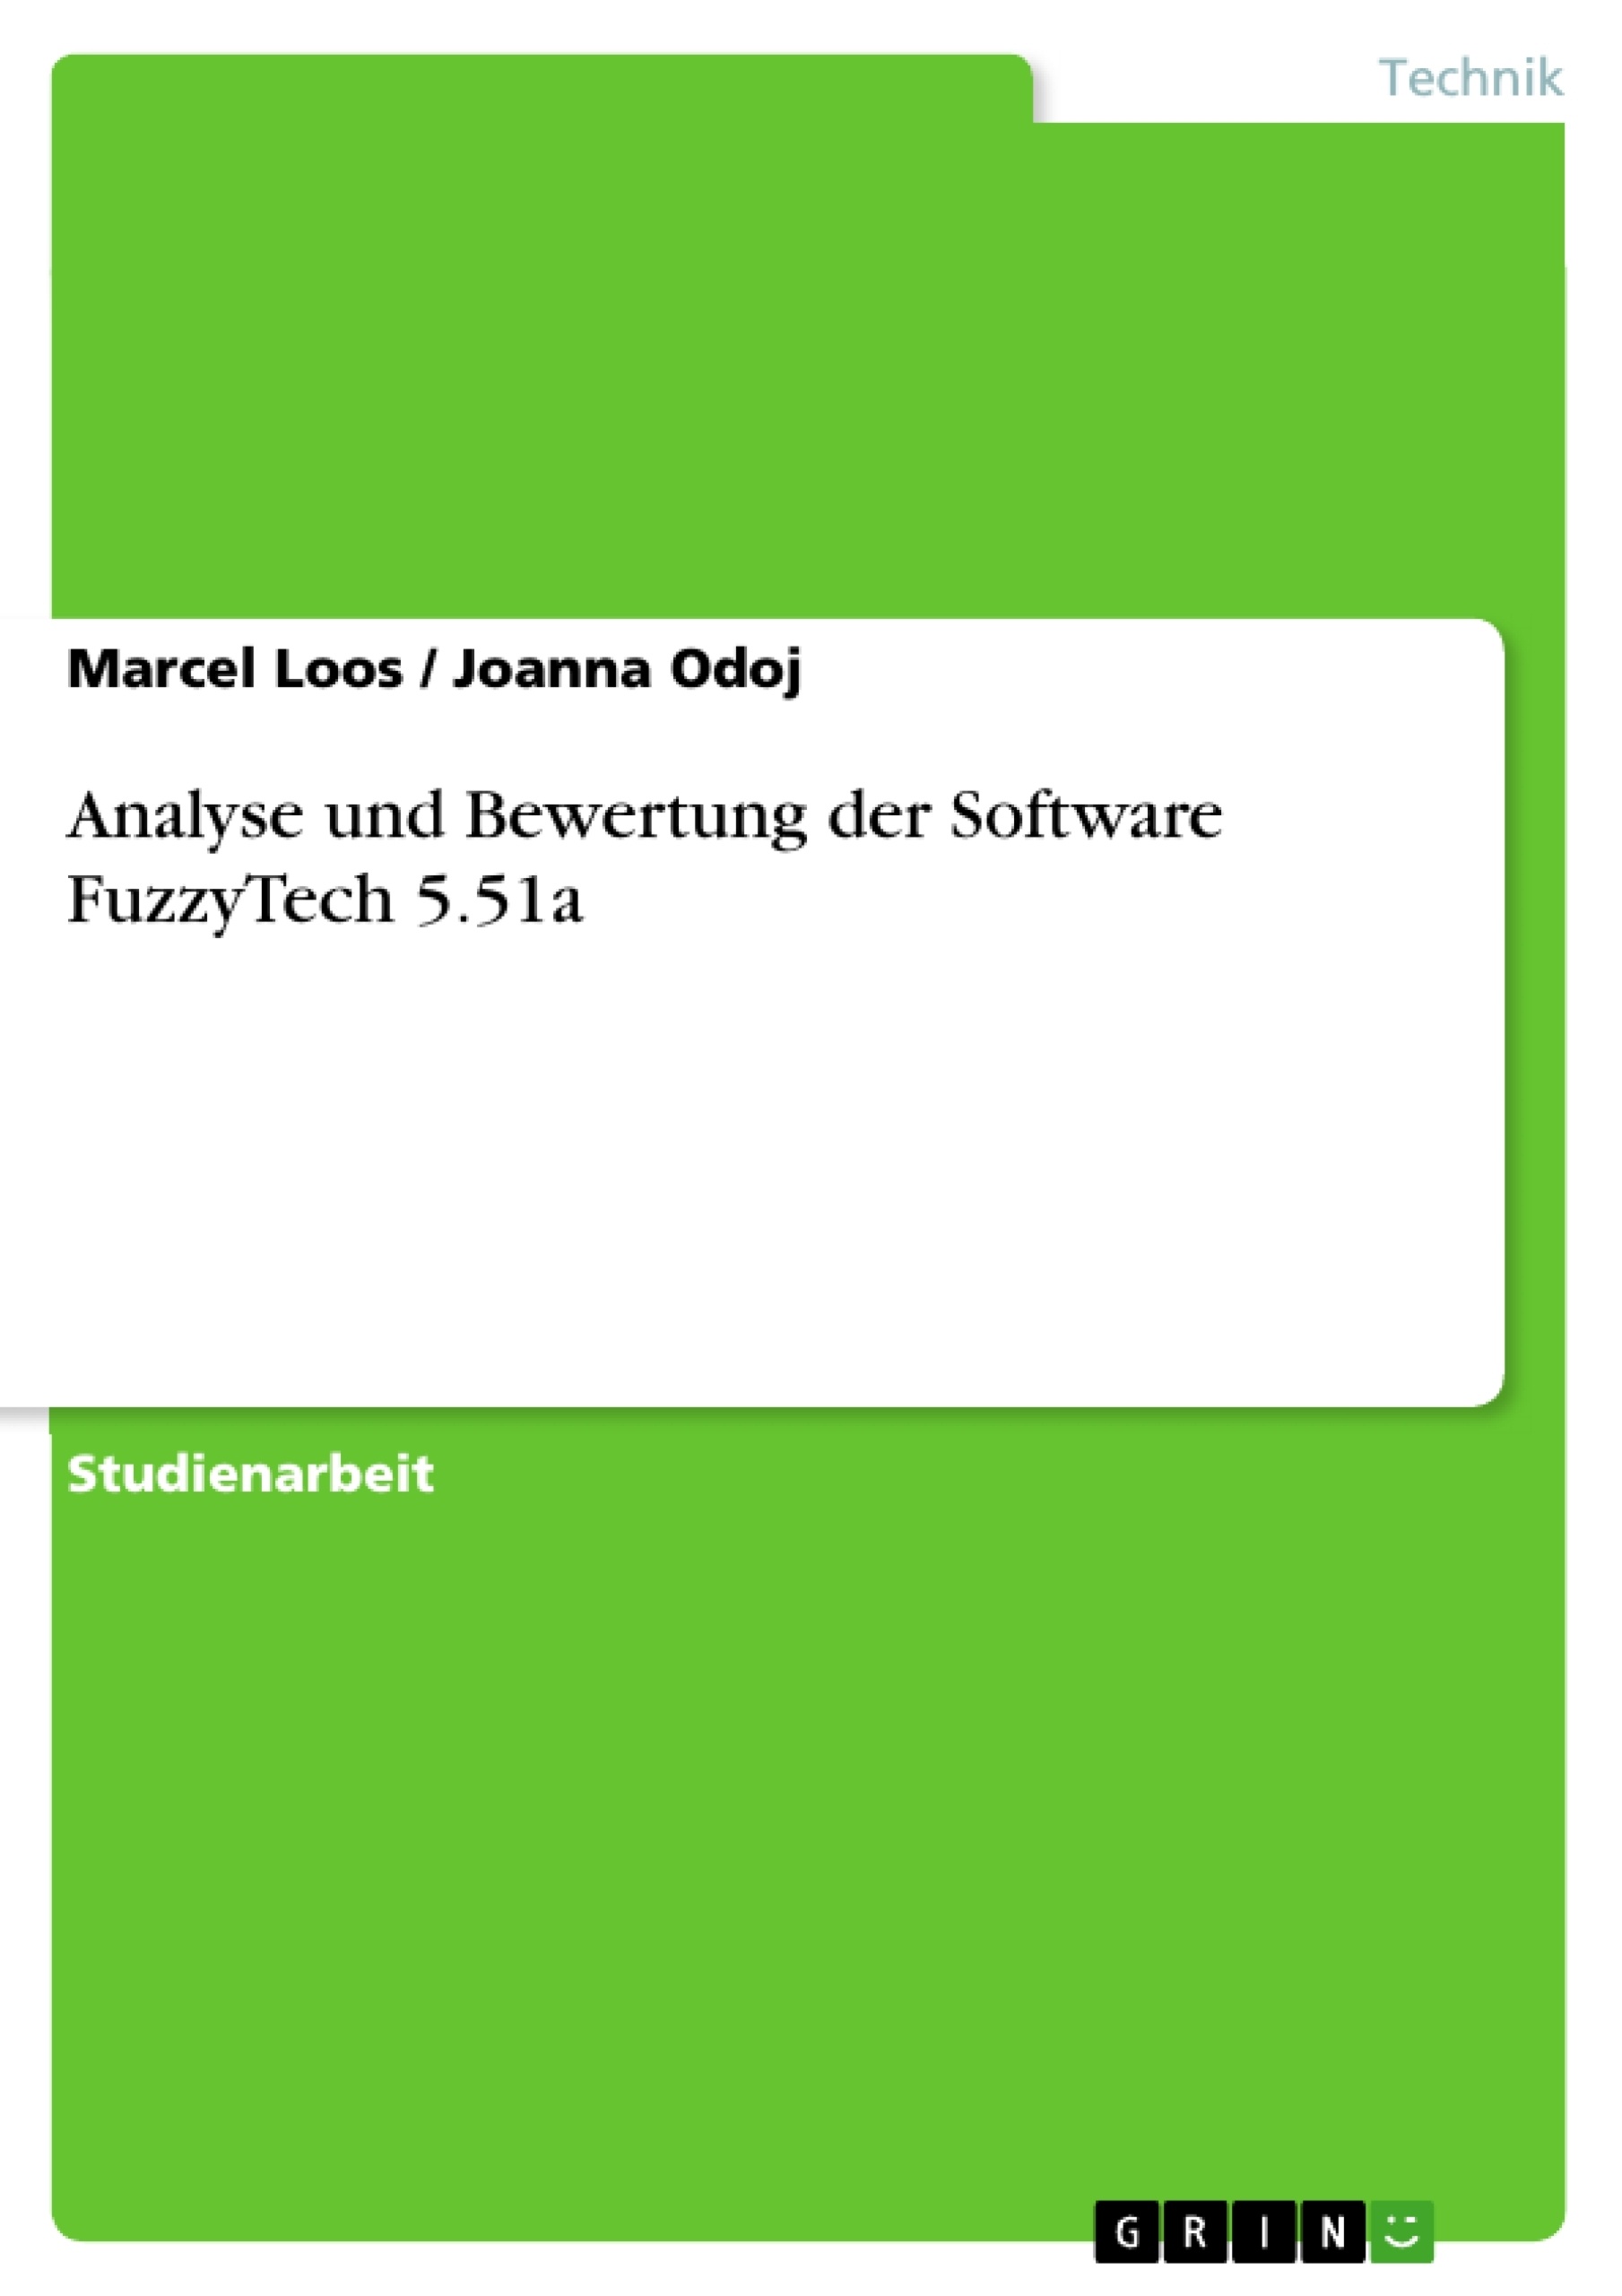 Titel: Analyse und Bewertung der Software FuzzyTech 5.51a